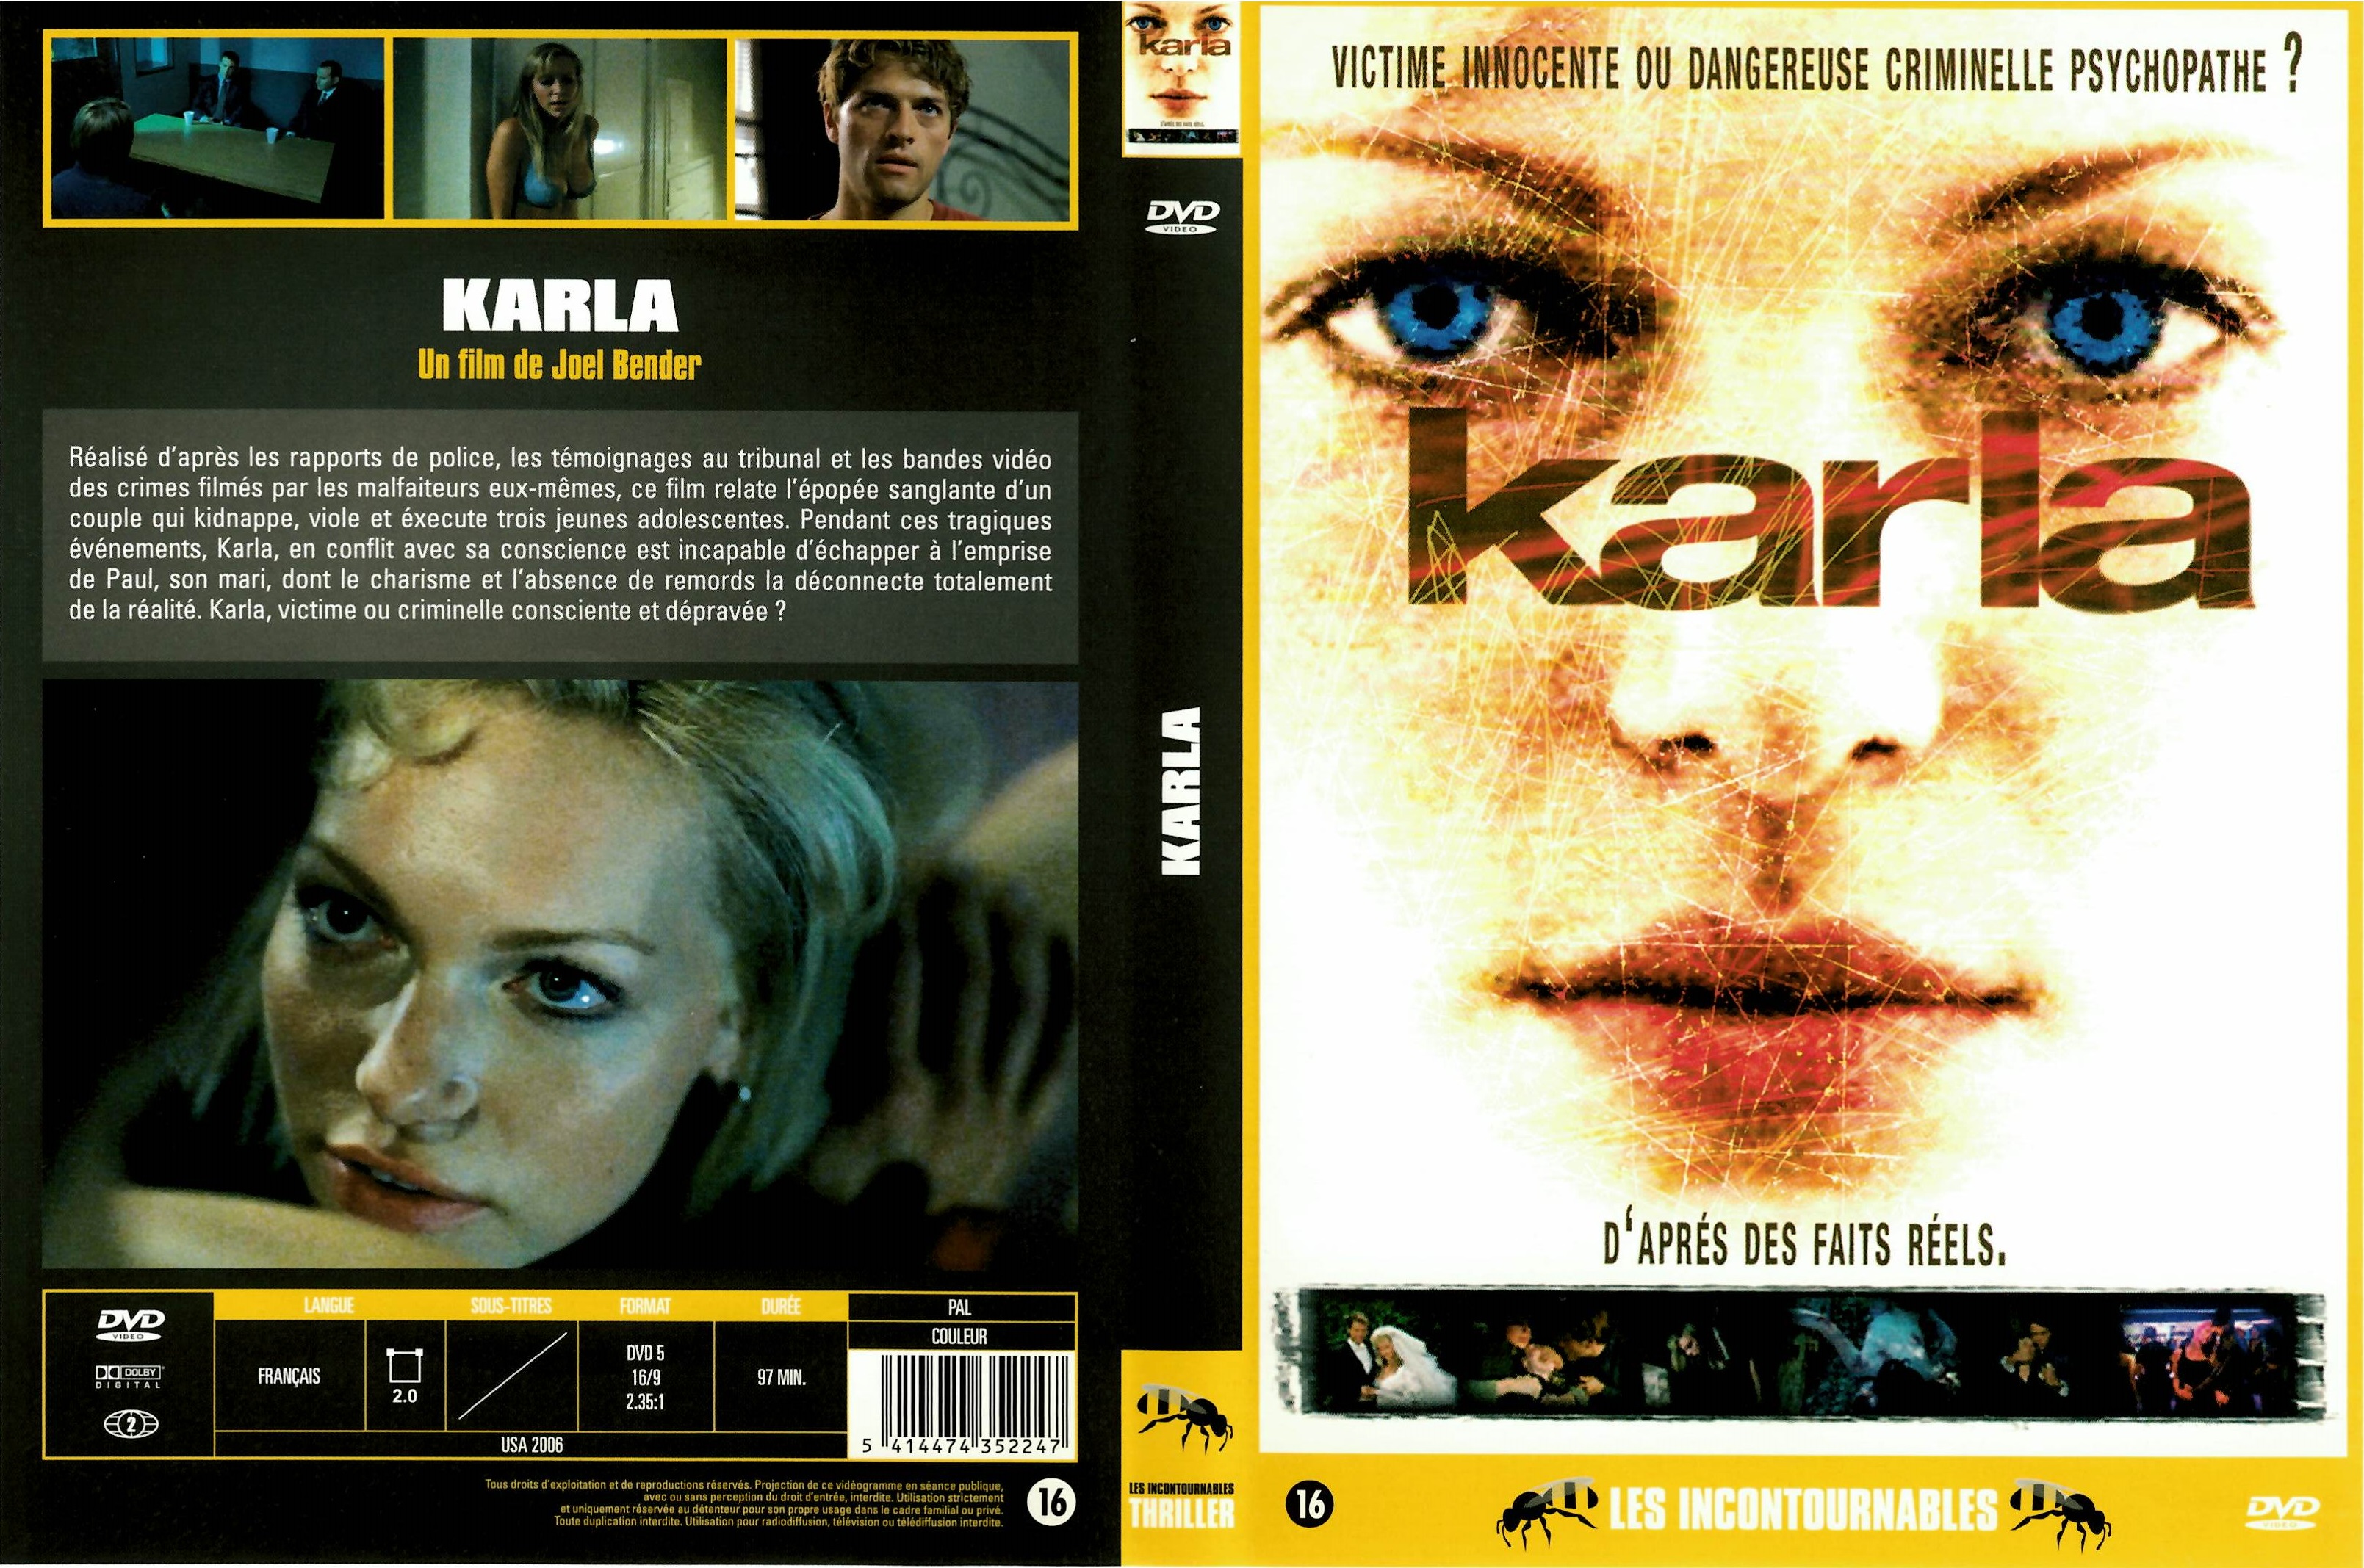 Jaquette DVD Karla v2